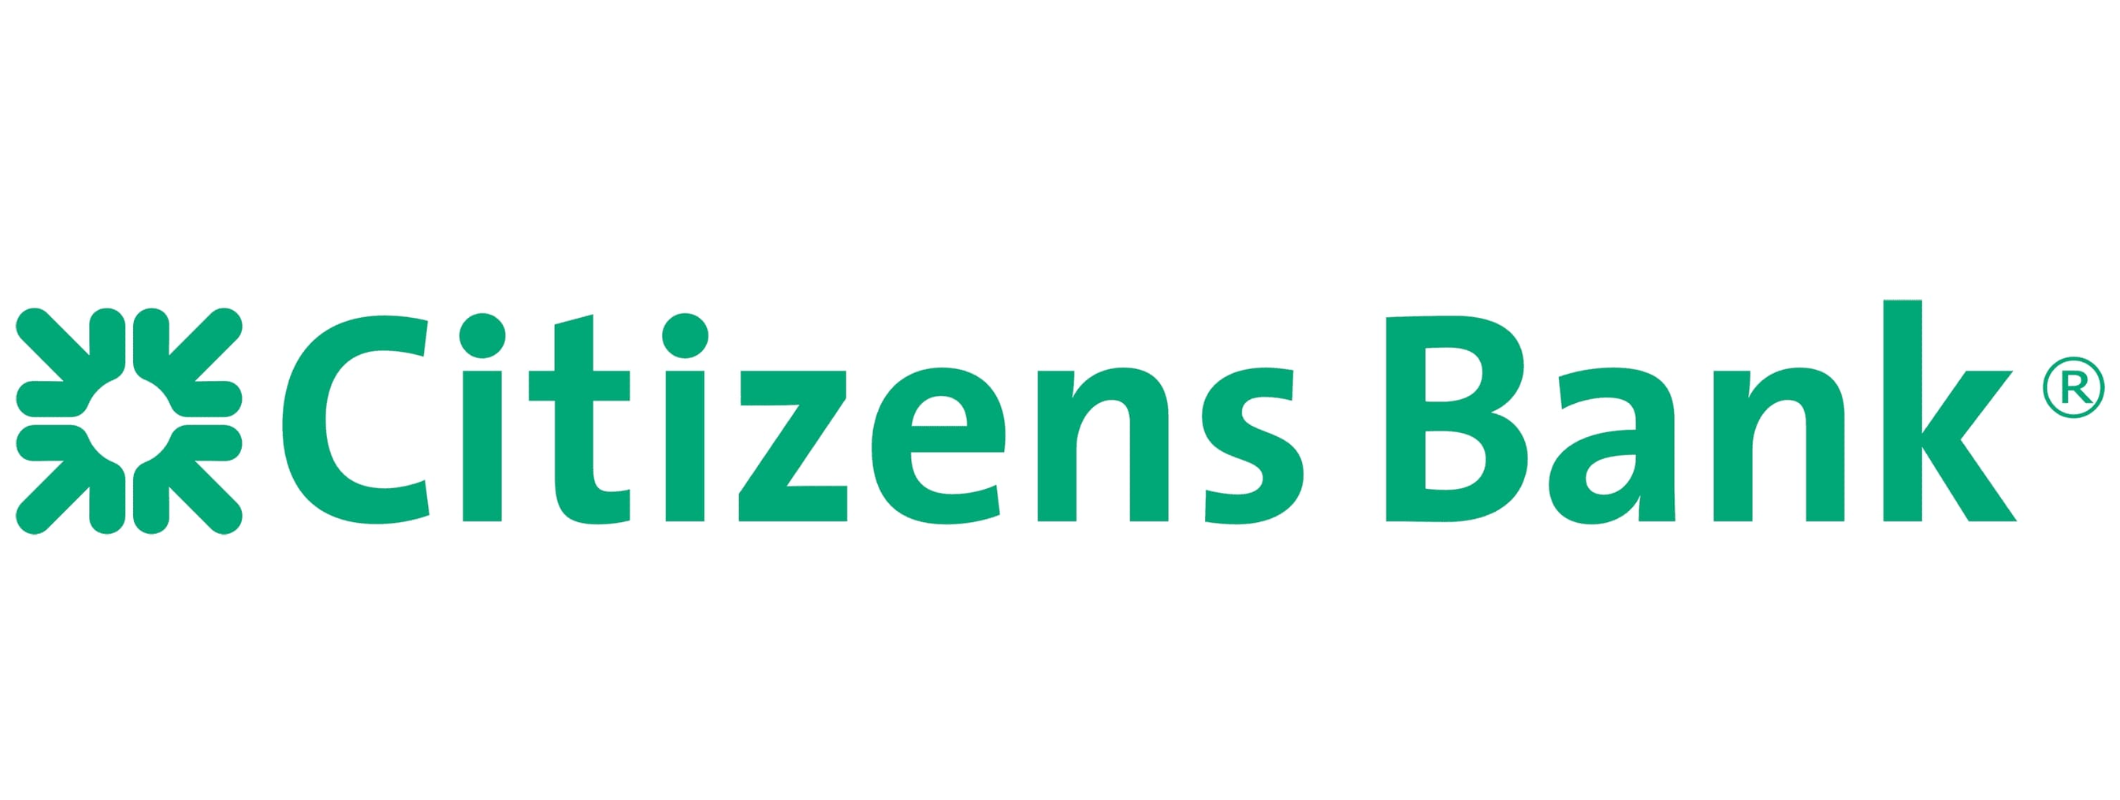 Citizens Bank-1